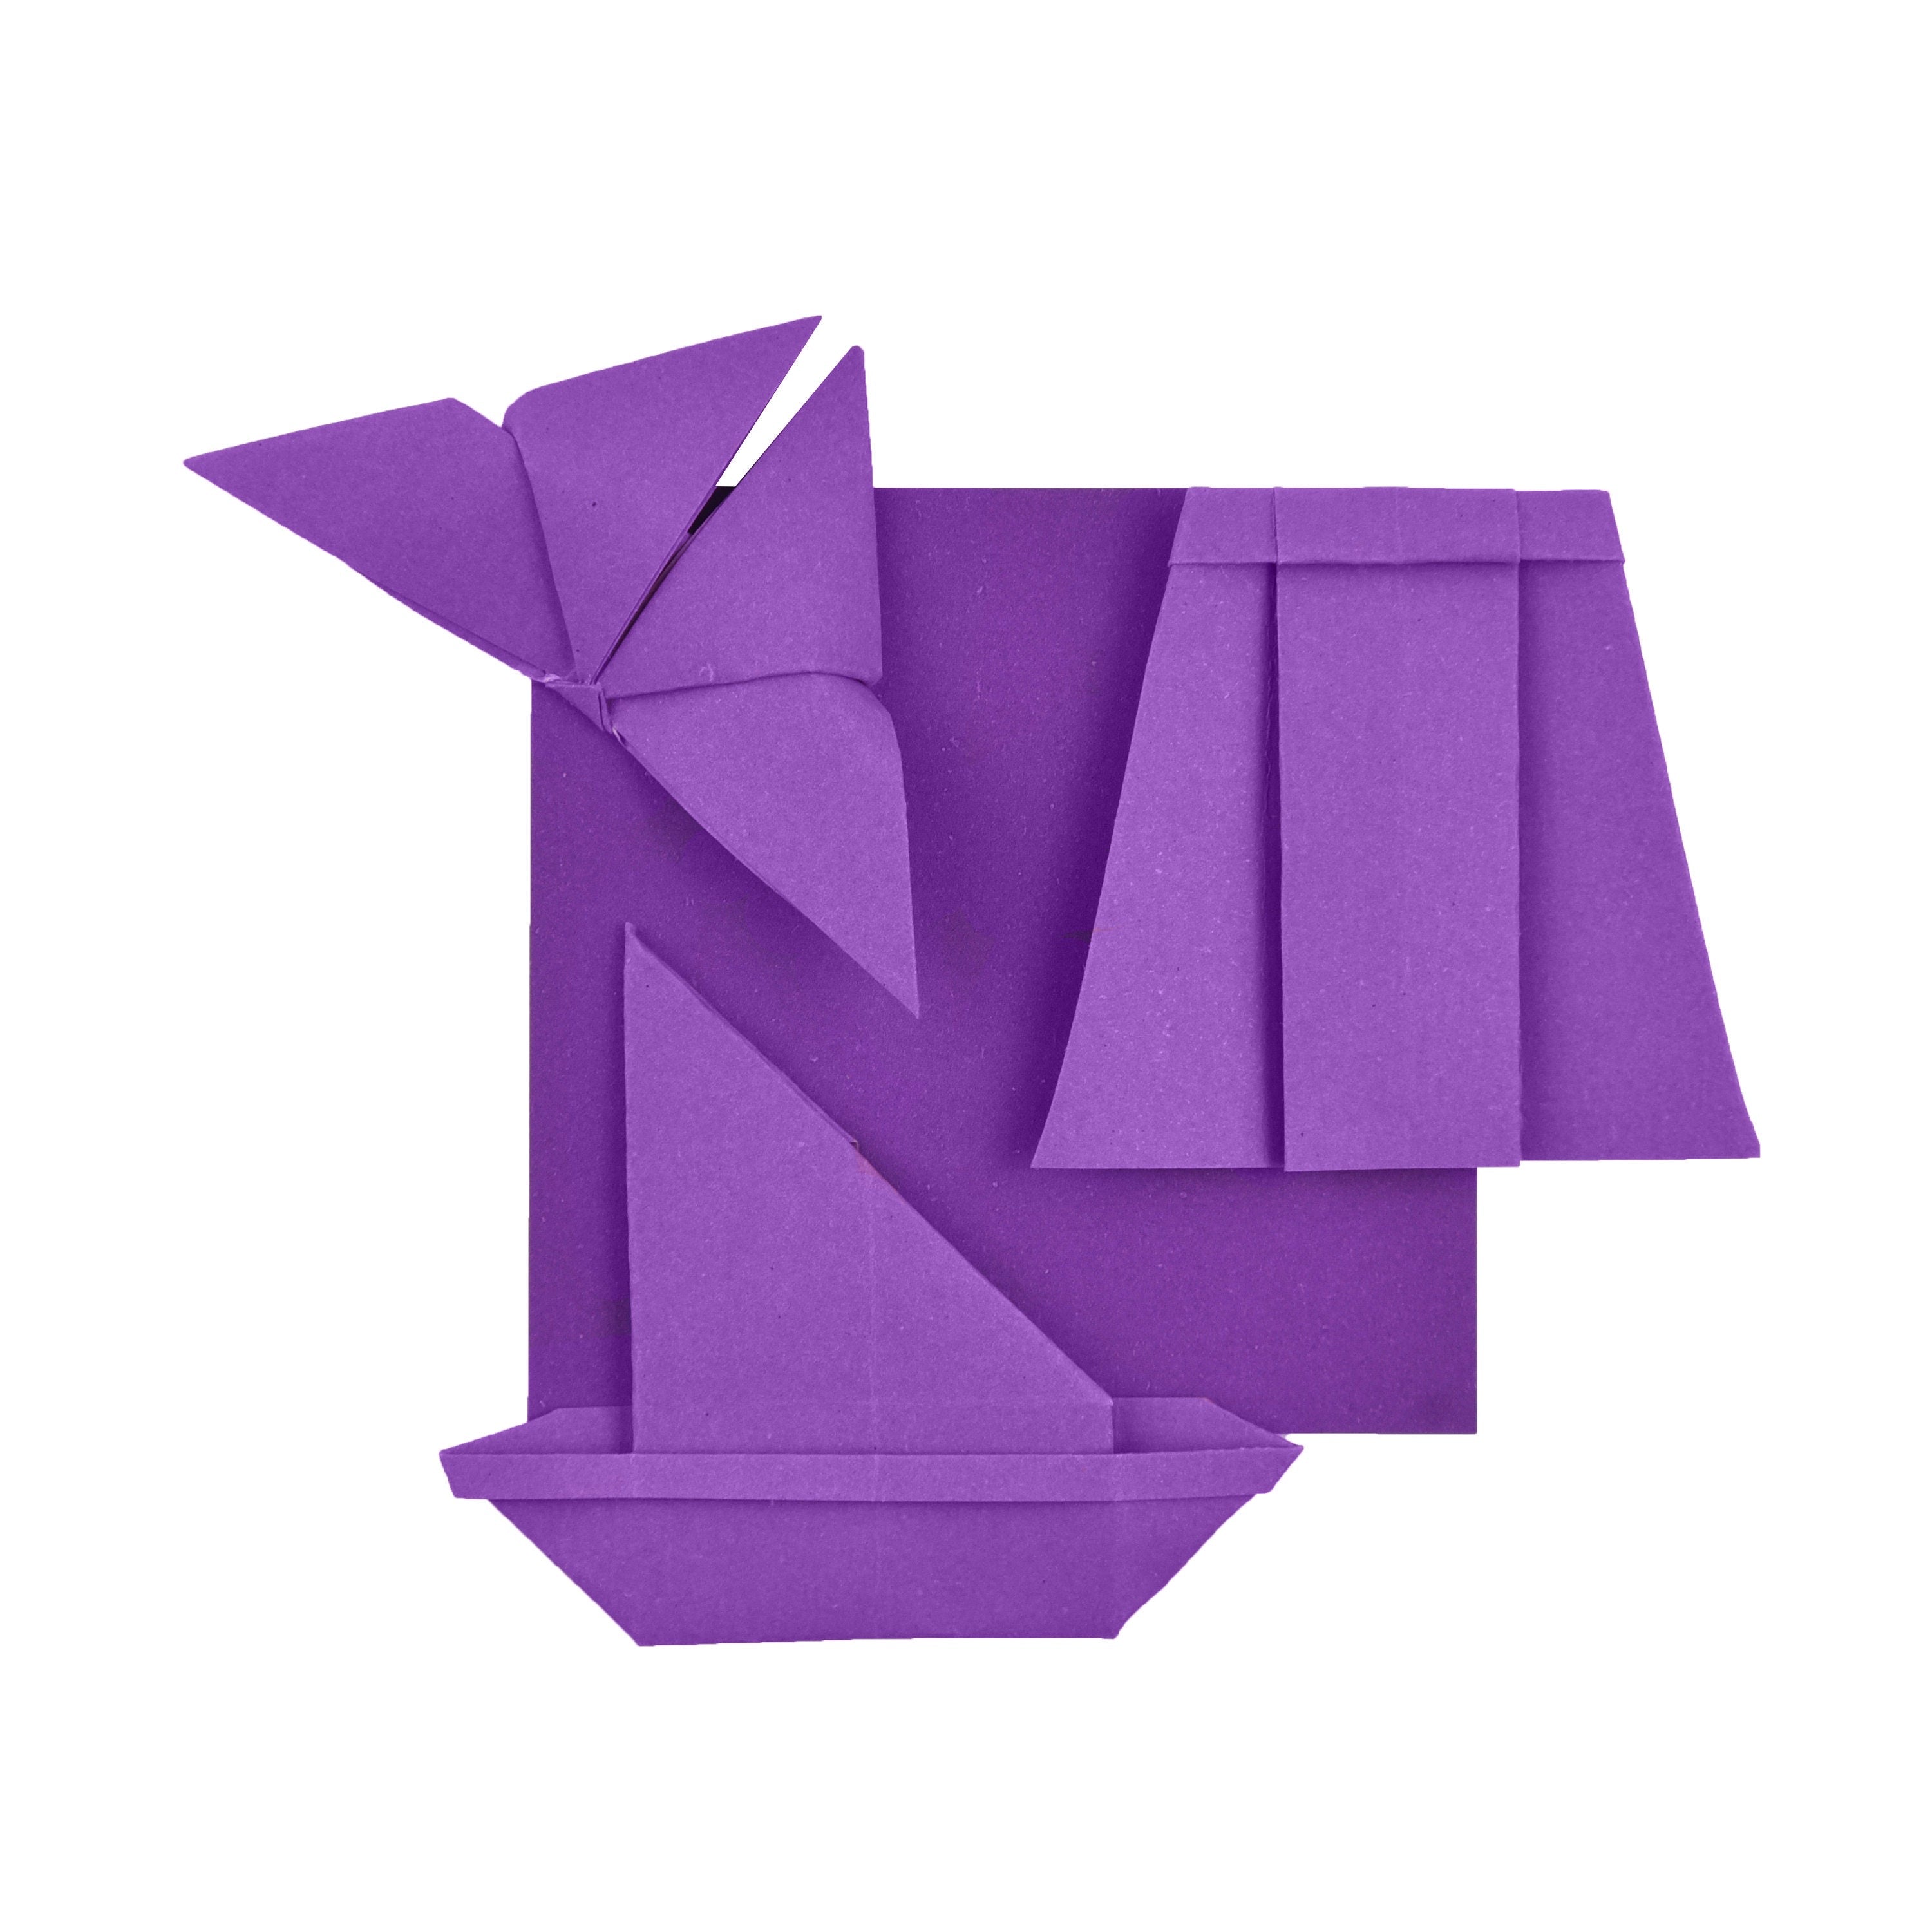 100 Hojas de Papel Origami - 3x3 pulgadas - Paquete de Papel Cuadrado para Plegar, Grullas de Origami y Decoración - P04